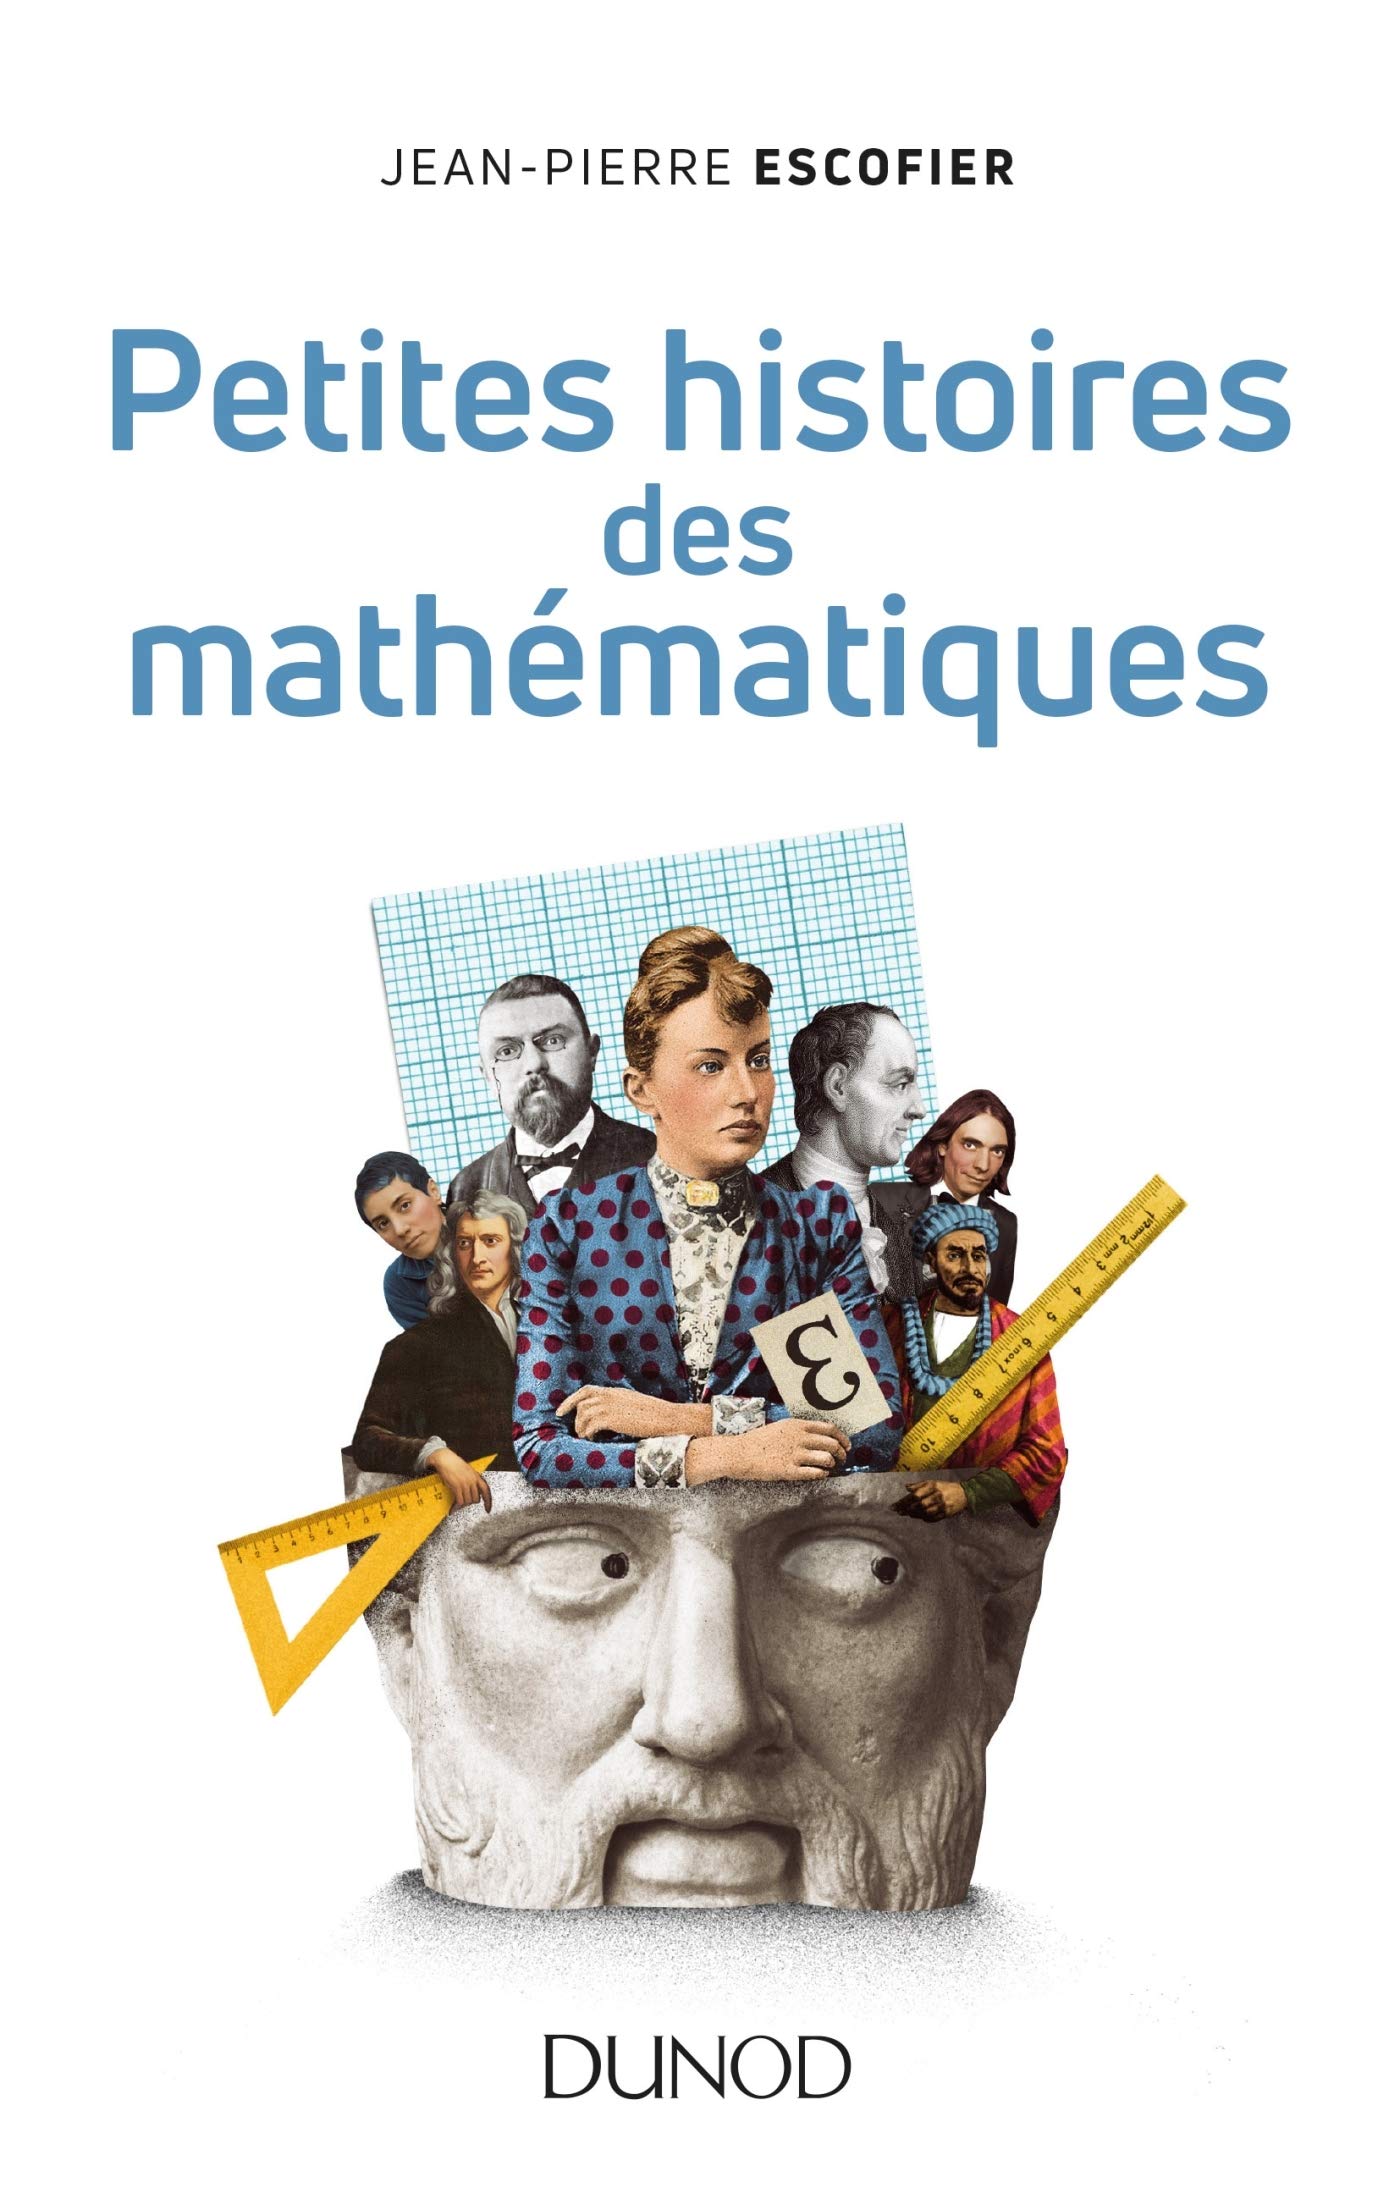 image Petite histoire des mathematiques